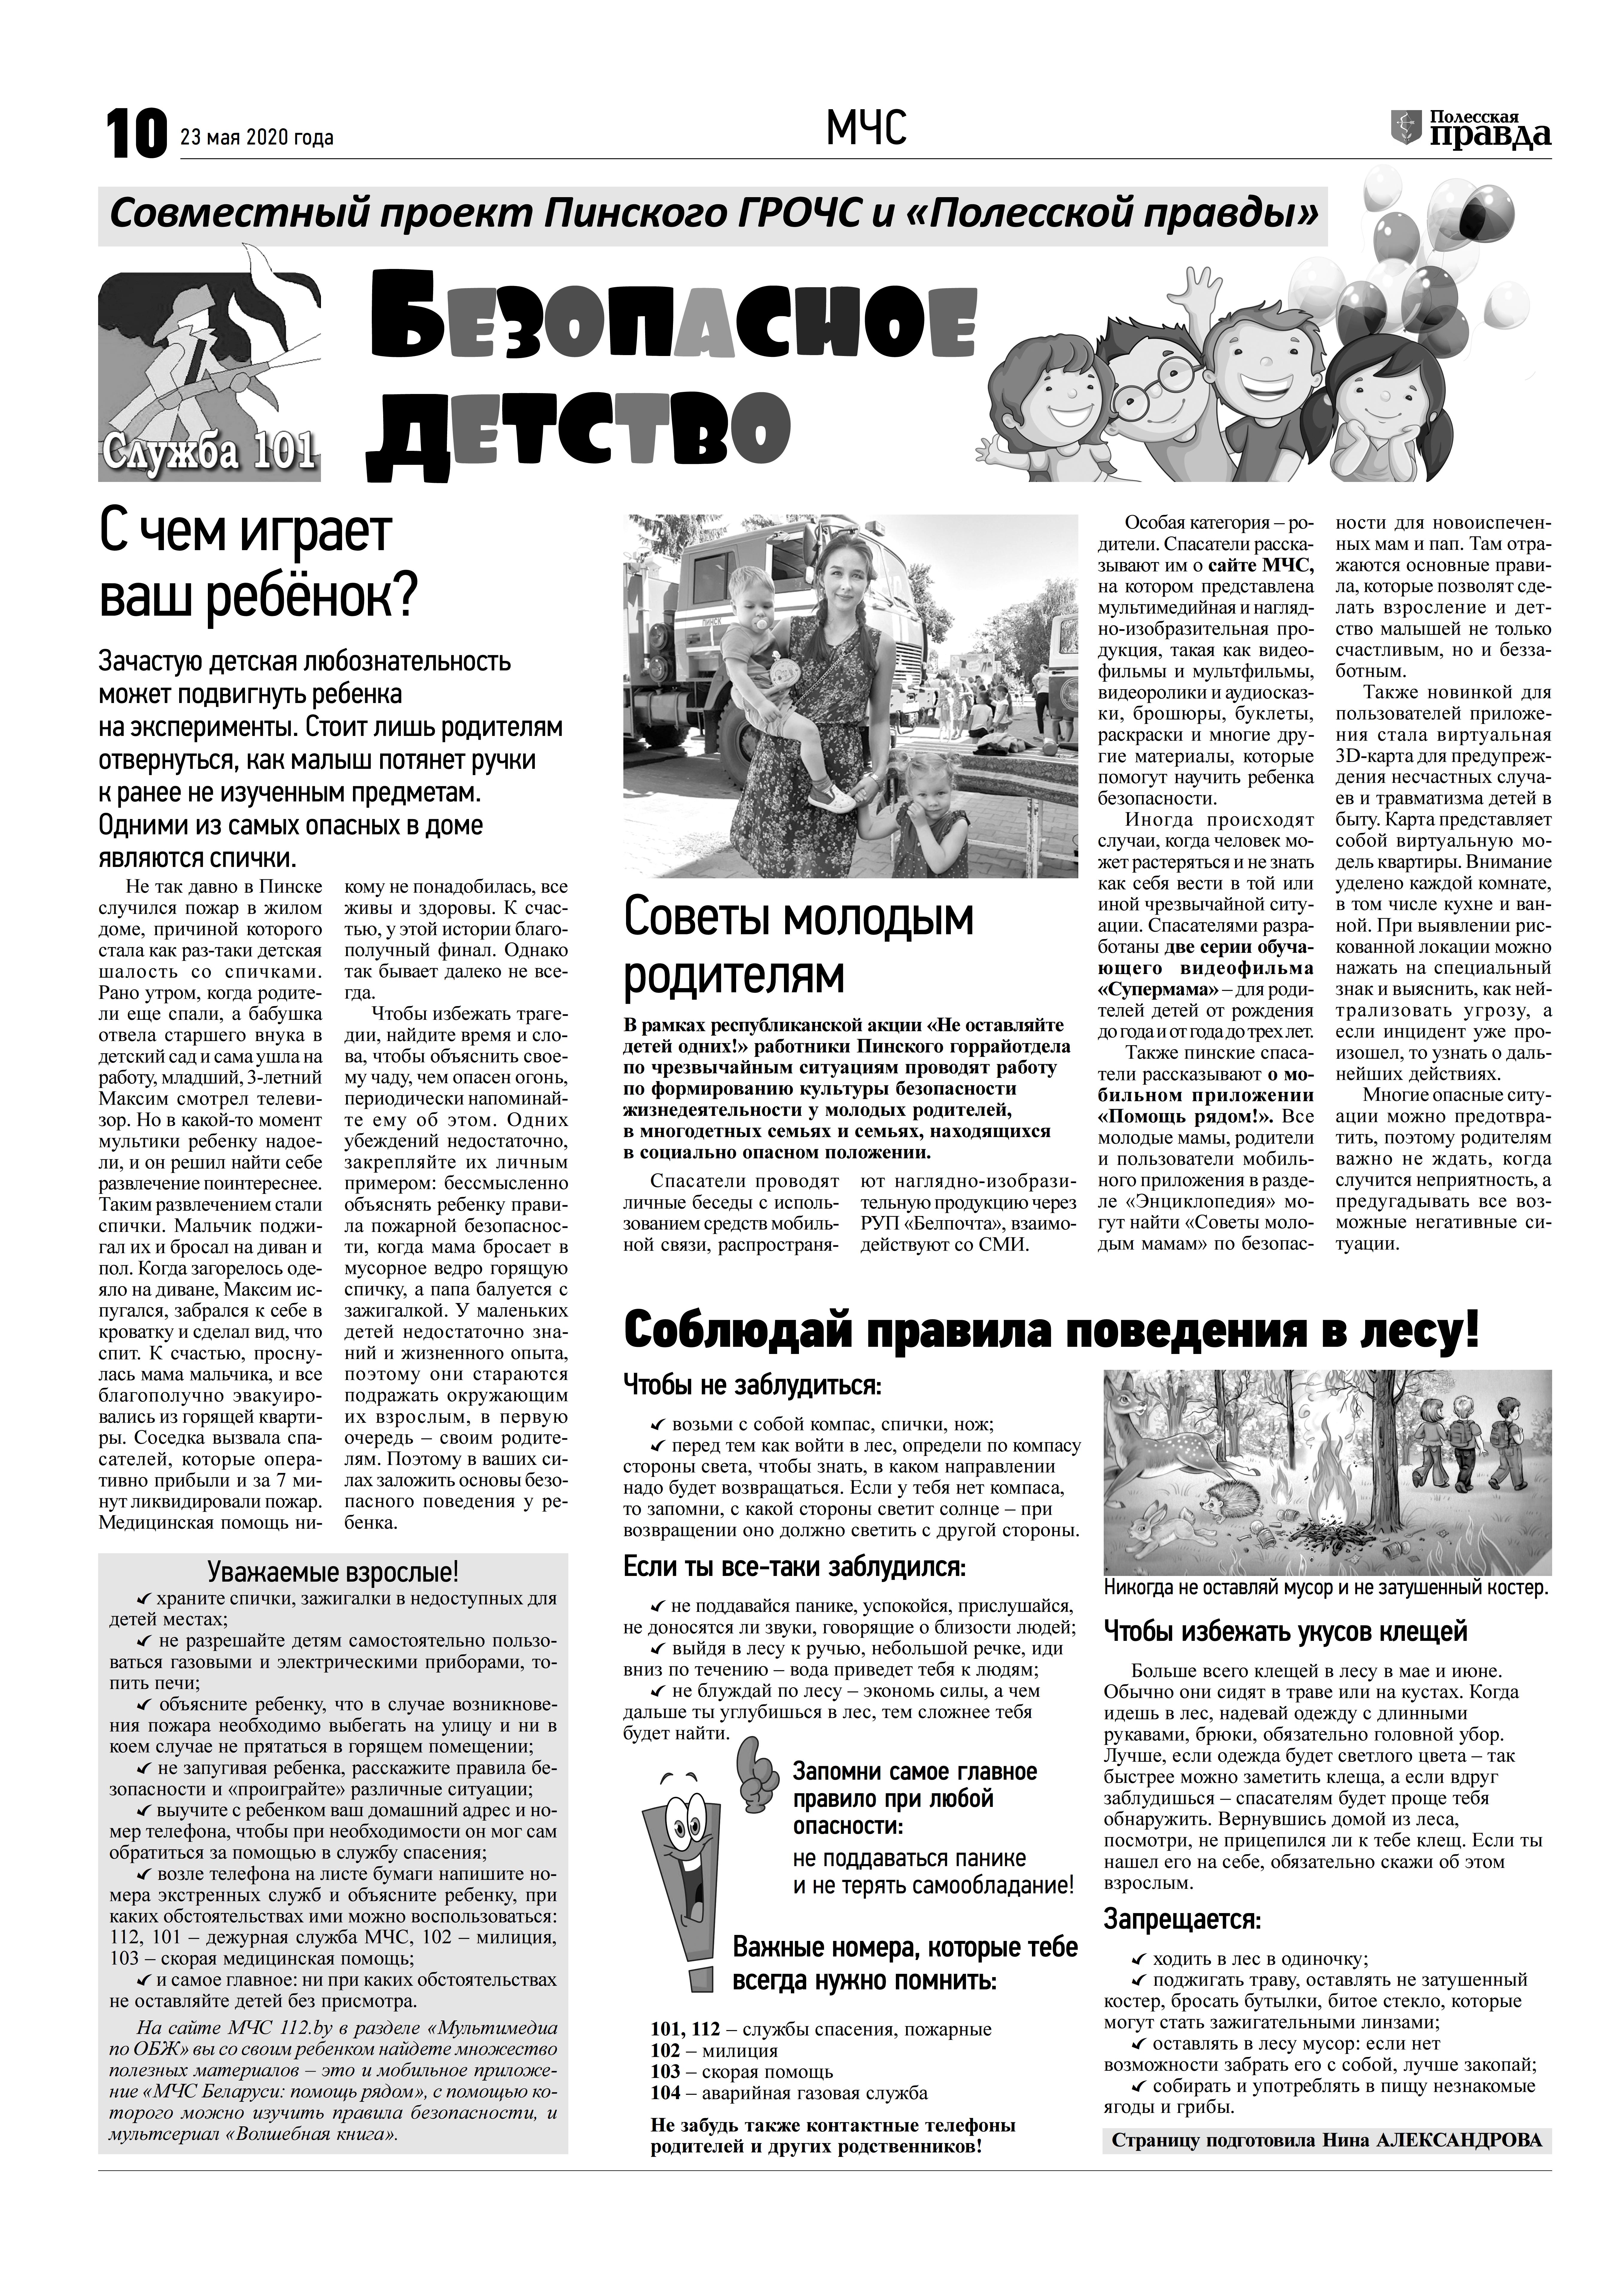 Безопасное детство (Полесская правда, 23.05.2020, г. Пинск)